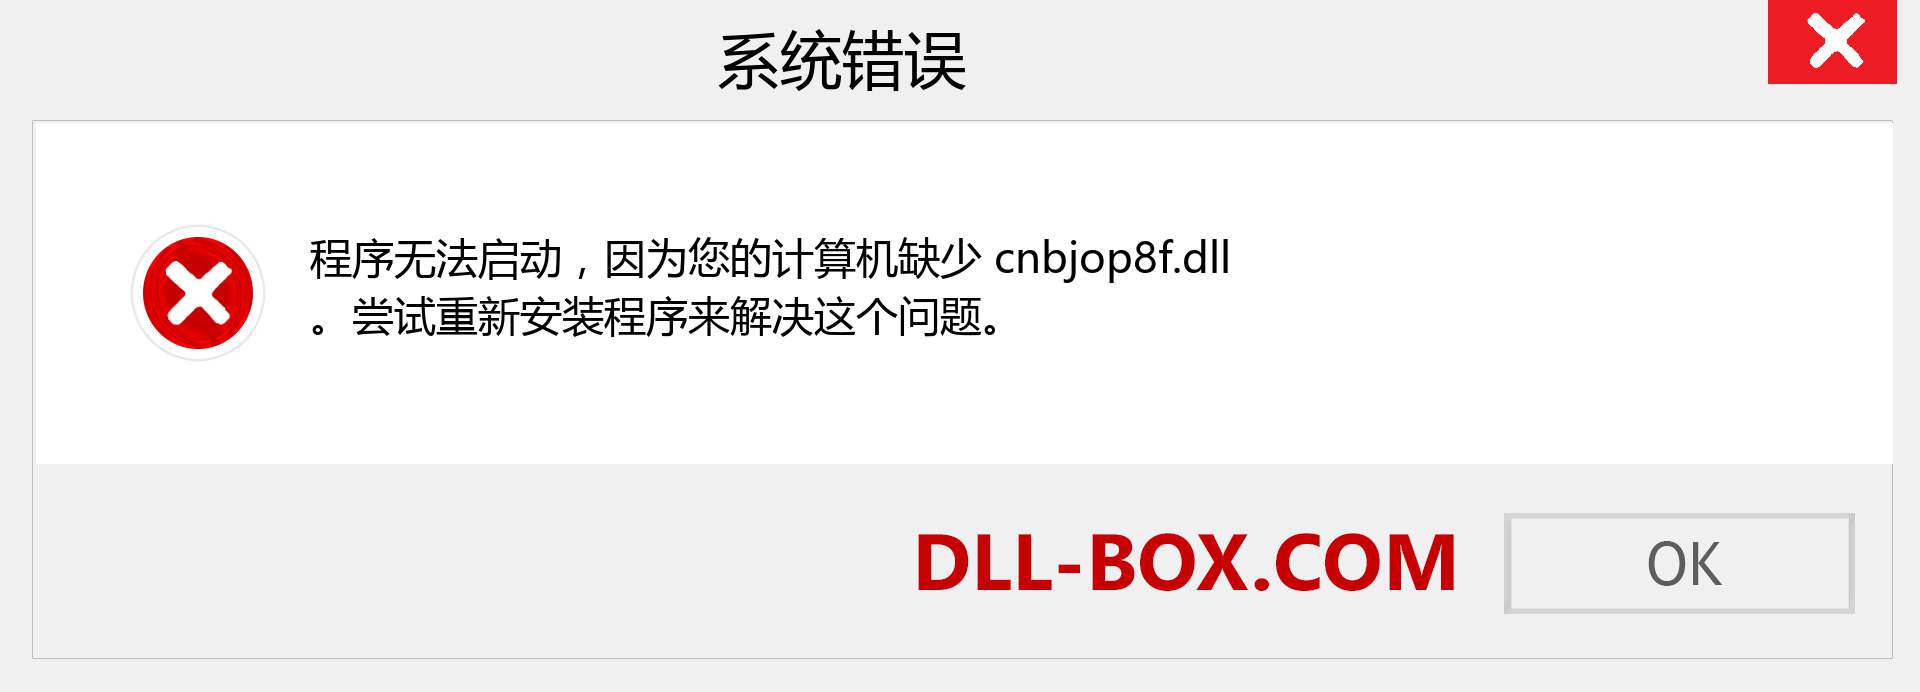 cnbjop8f.dll 文件丢失？。 适用于 Windows 7、8、10 的下载 - 修复 Windows、照片、图像上的 cnbjop8f dll 丢失错误